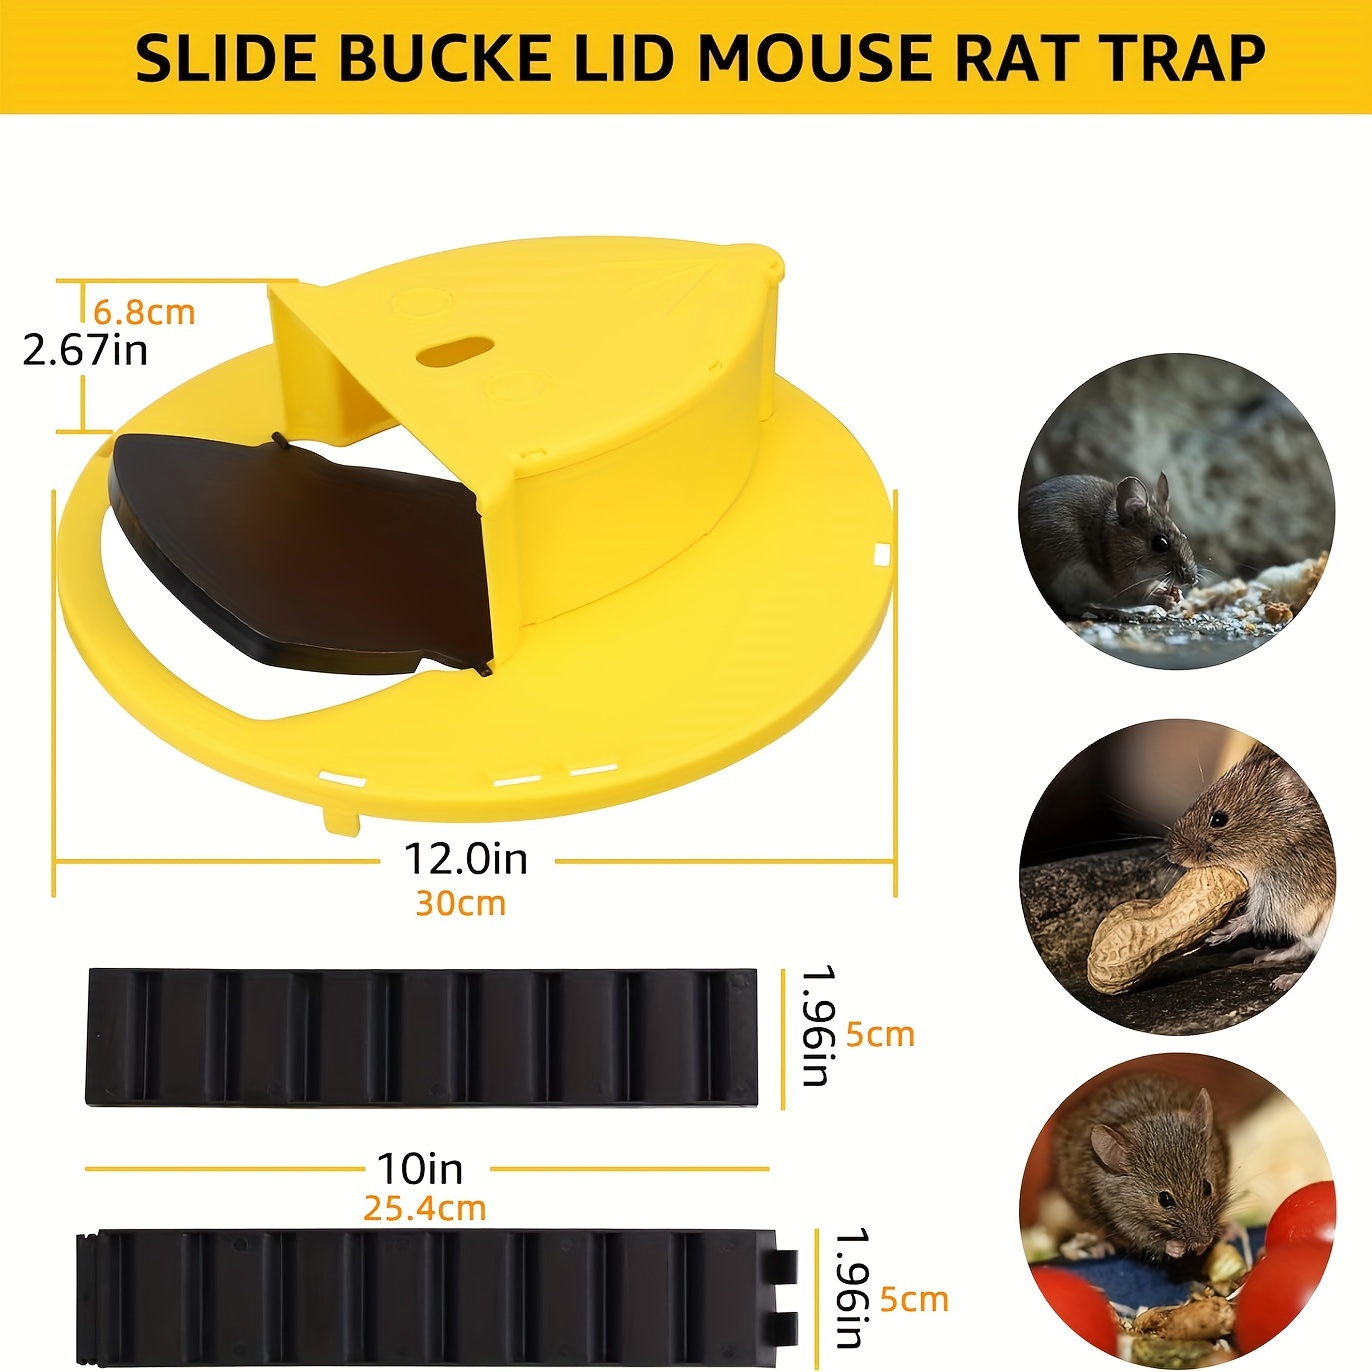 Mouse Rat Trap Flip & Slide Mouse Trap Bucket Catcher Mousetrap Slide  Bucket Lid